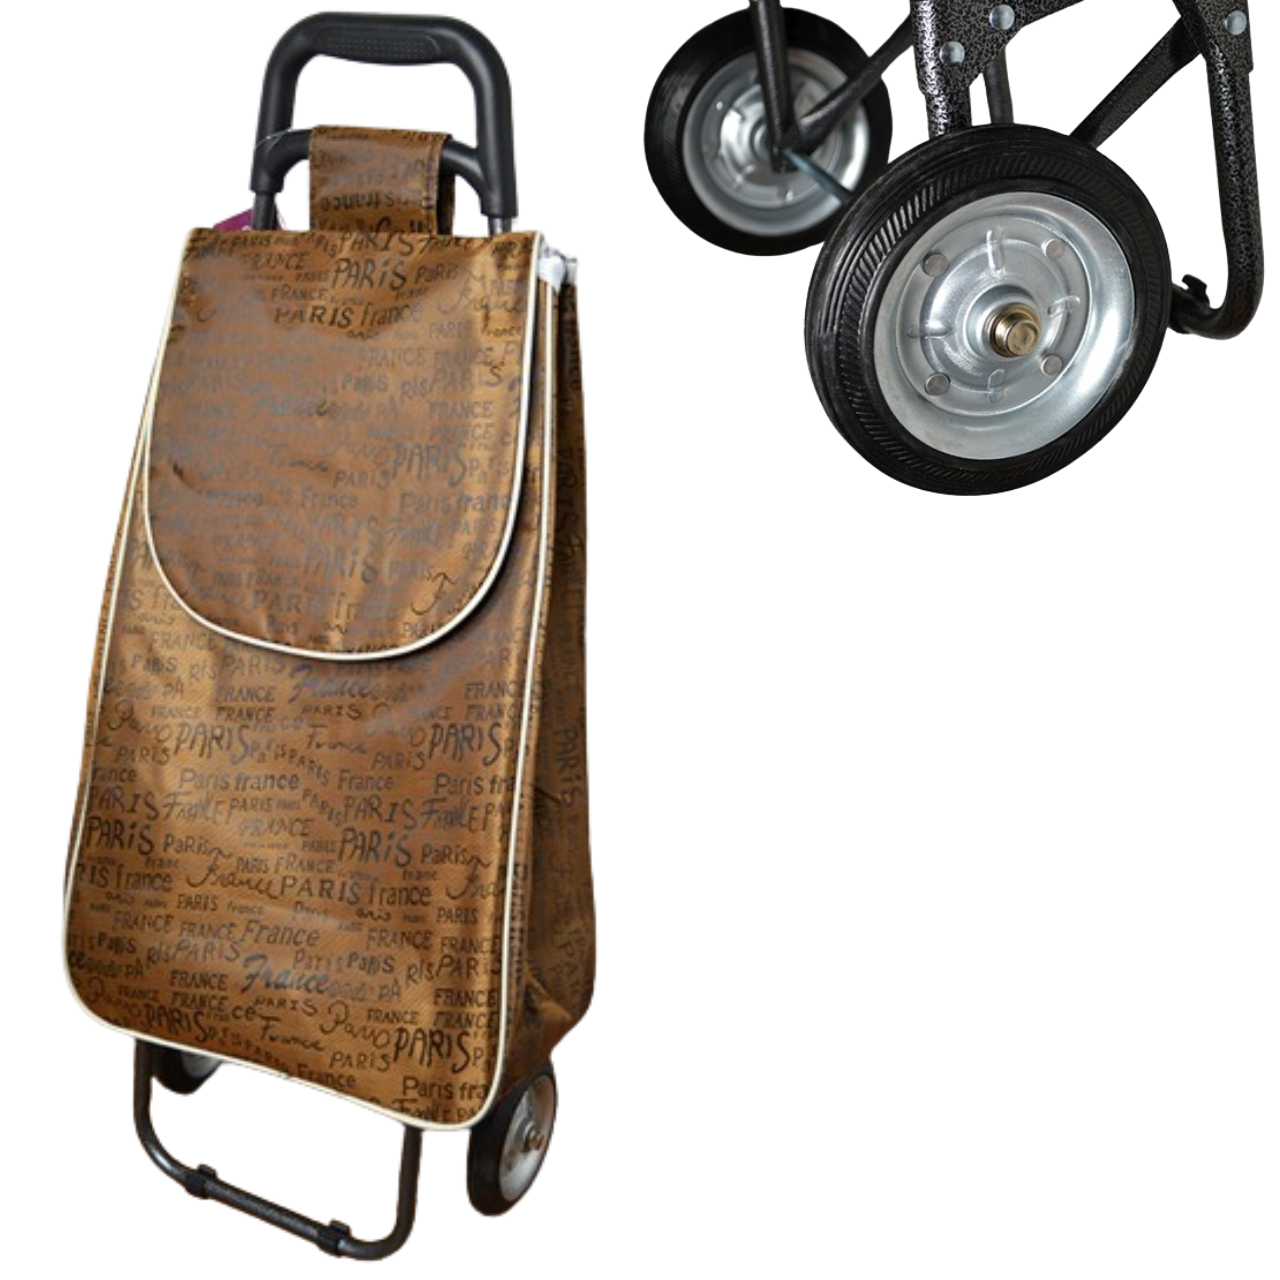 Сумка-візок господарська посилена, сумка візок із металевими колесами, сумка господарська тачка